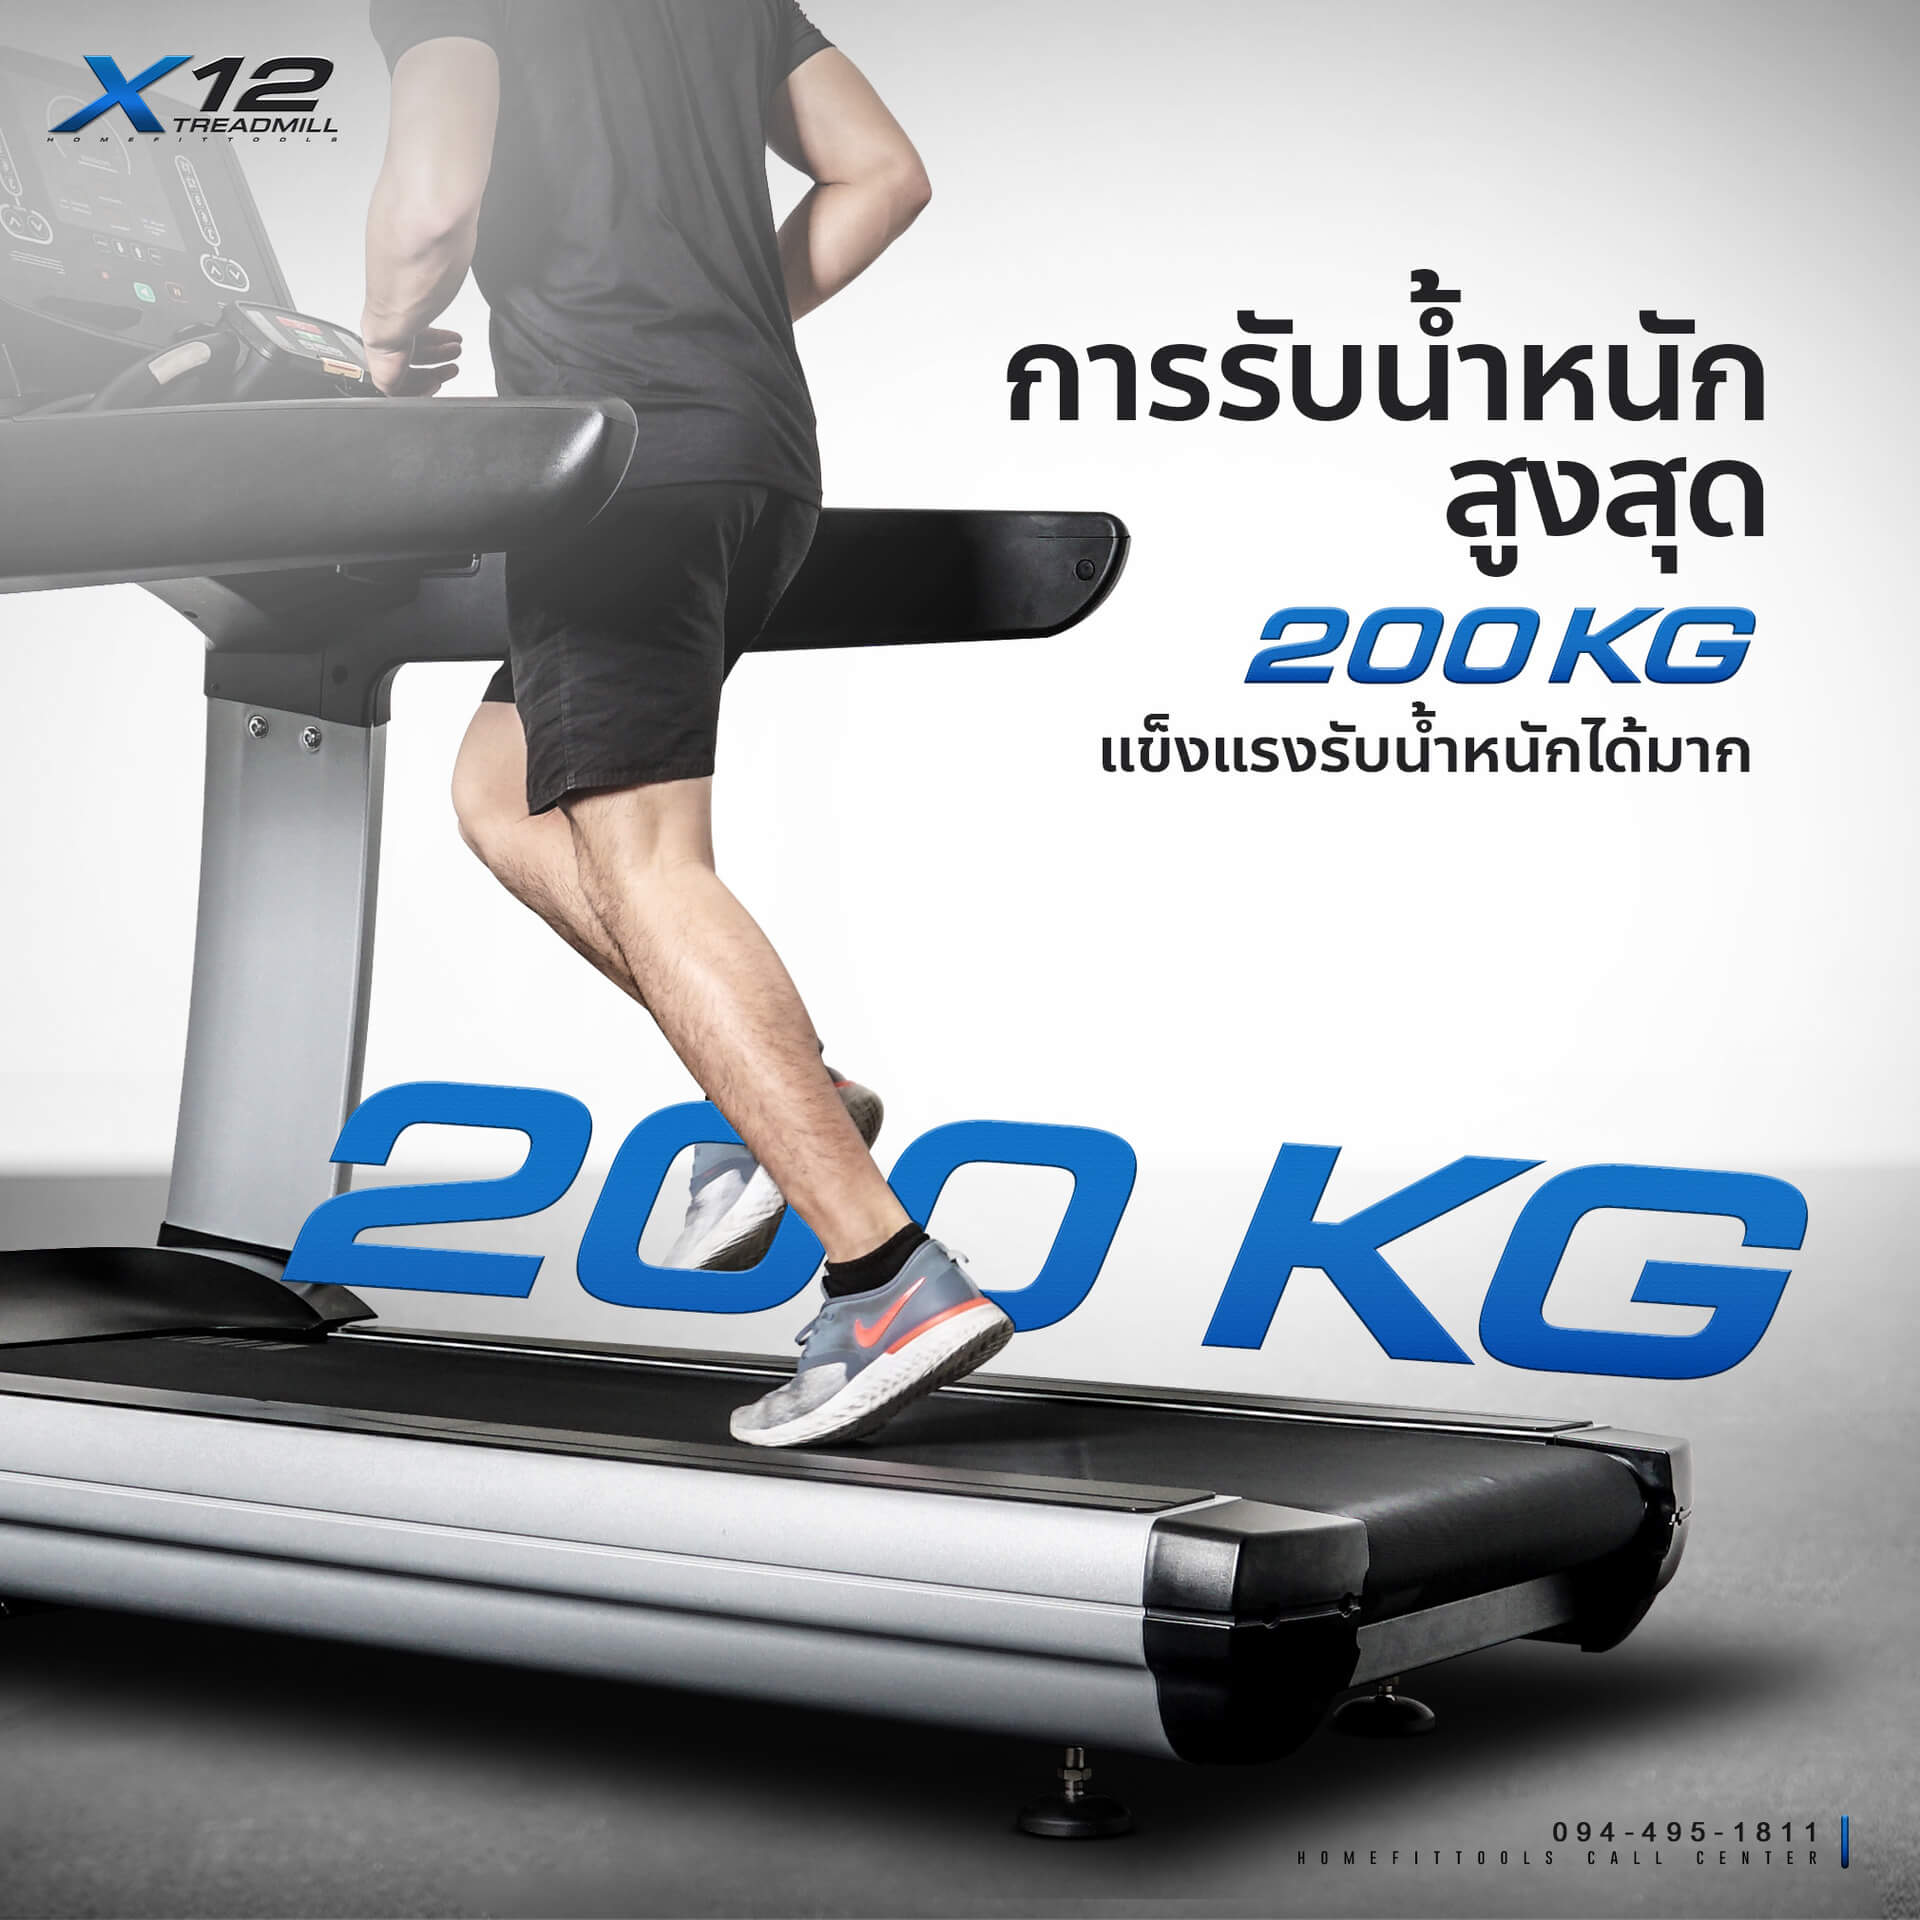 การรับน้ำหนัก ลู่วิ่ง Treadmill รุ่น X12 เครื่องออกกำลังกาย ลู่วิ่งออกกำลังกาย ลู่วิ่งราคาถูก อุปกรณ์ฟิตเนส